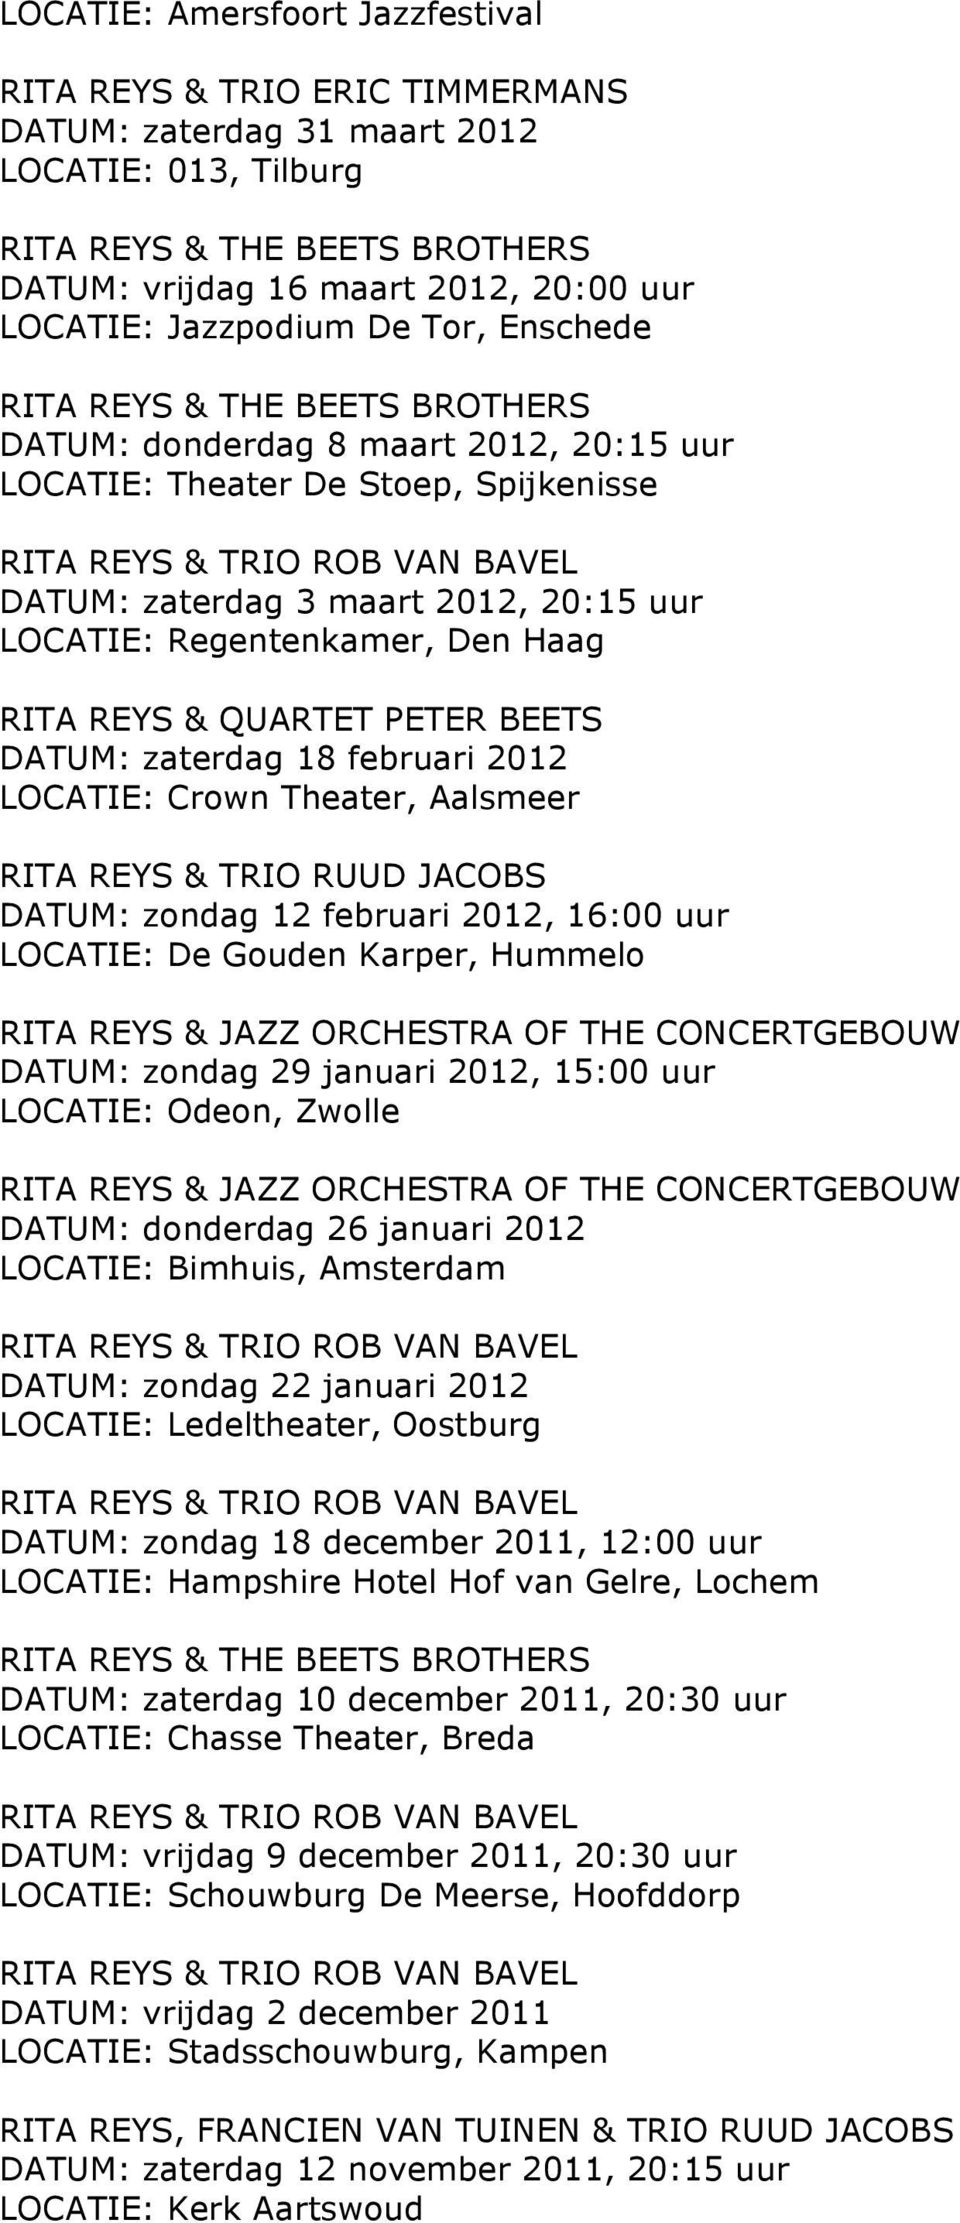 Regentenkamer, Den Haag RITA REYS & QUARTET PETER BEETS DATUM: zaterdag 18 februari 2012 LOCATIE: Crown Theater, Aalsmeer DATUM: zondag 12 februari 2012, 16:00 uur LOCATIE: De Gouden Karper, Hummelo